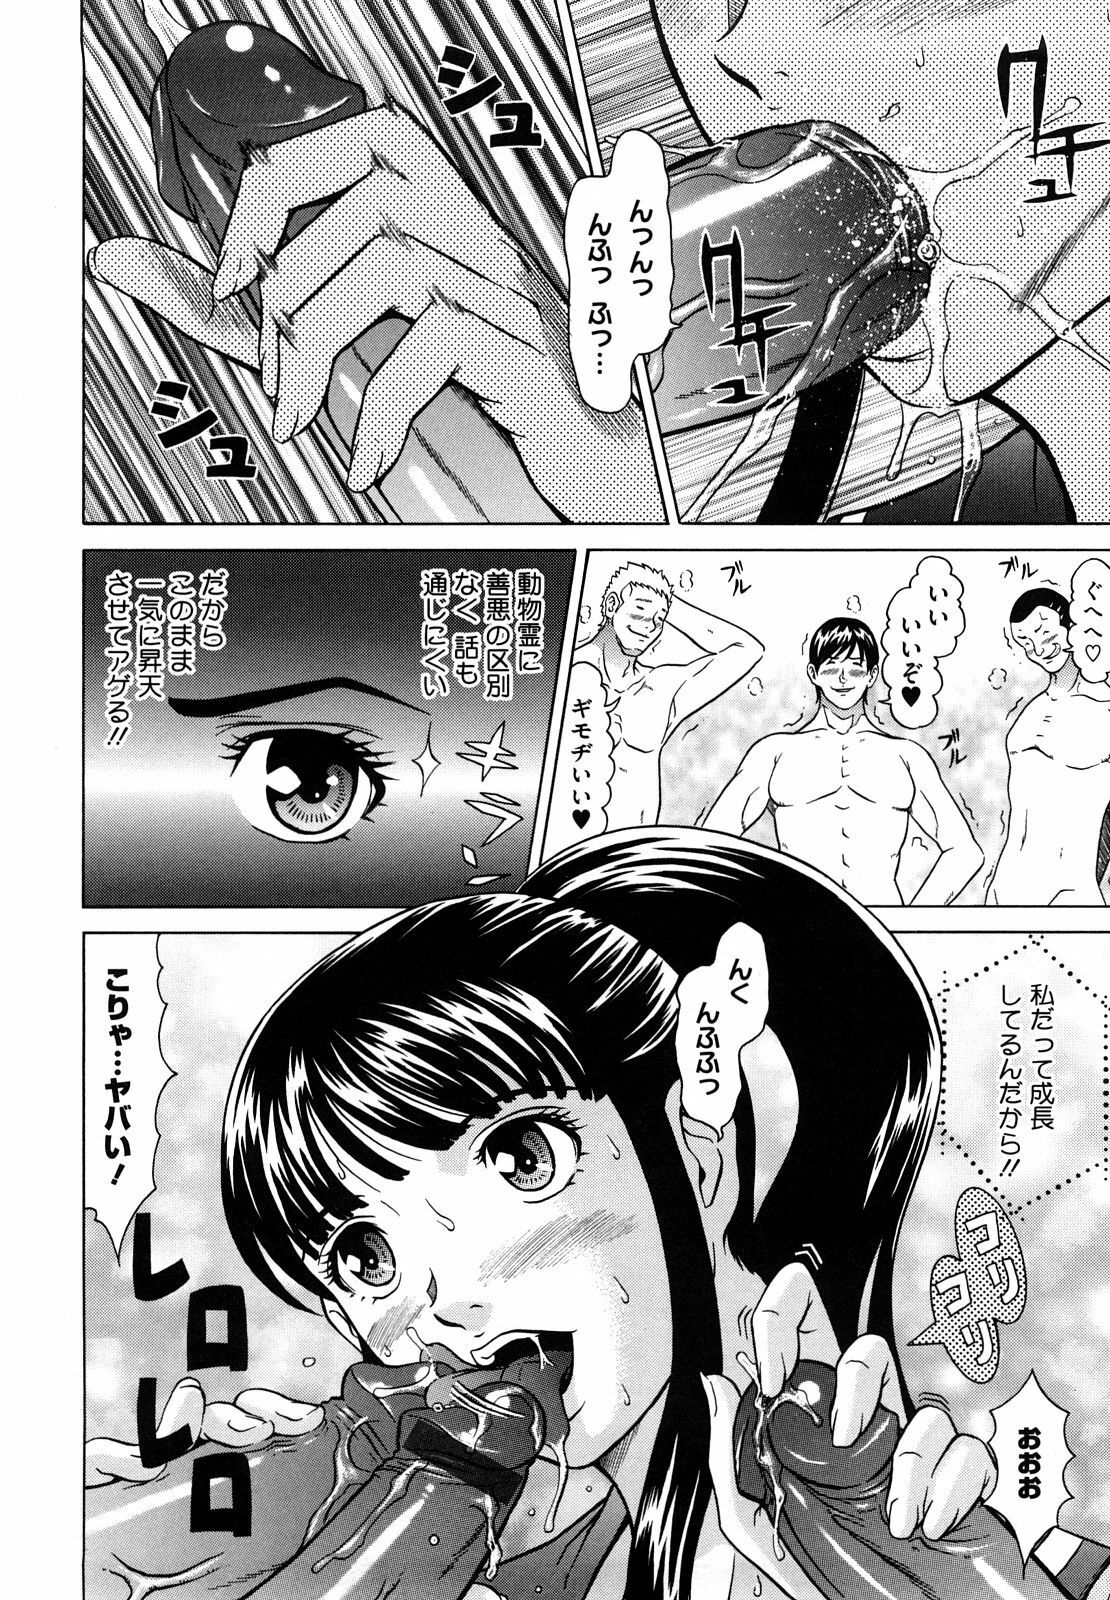 [Kurono Masakado] Nocturnal page 35 full